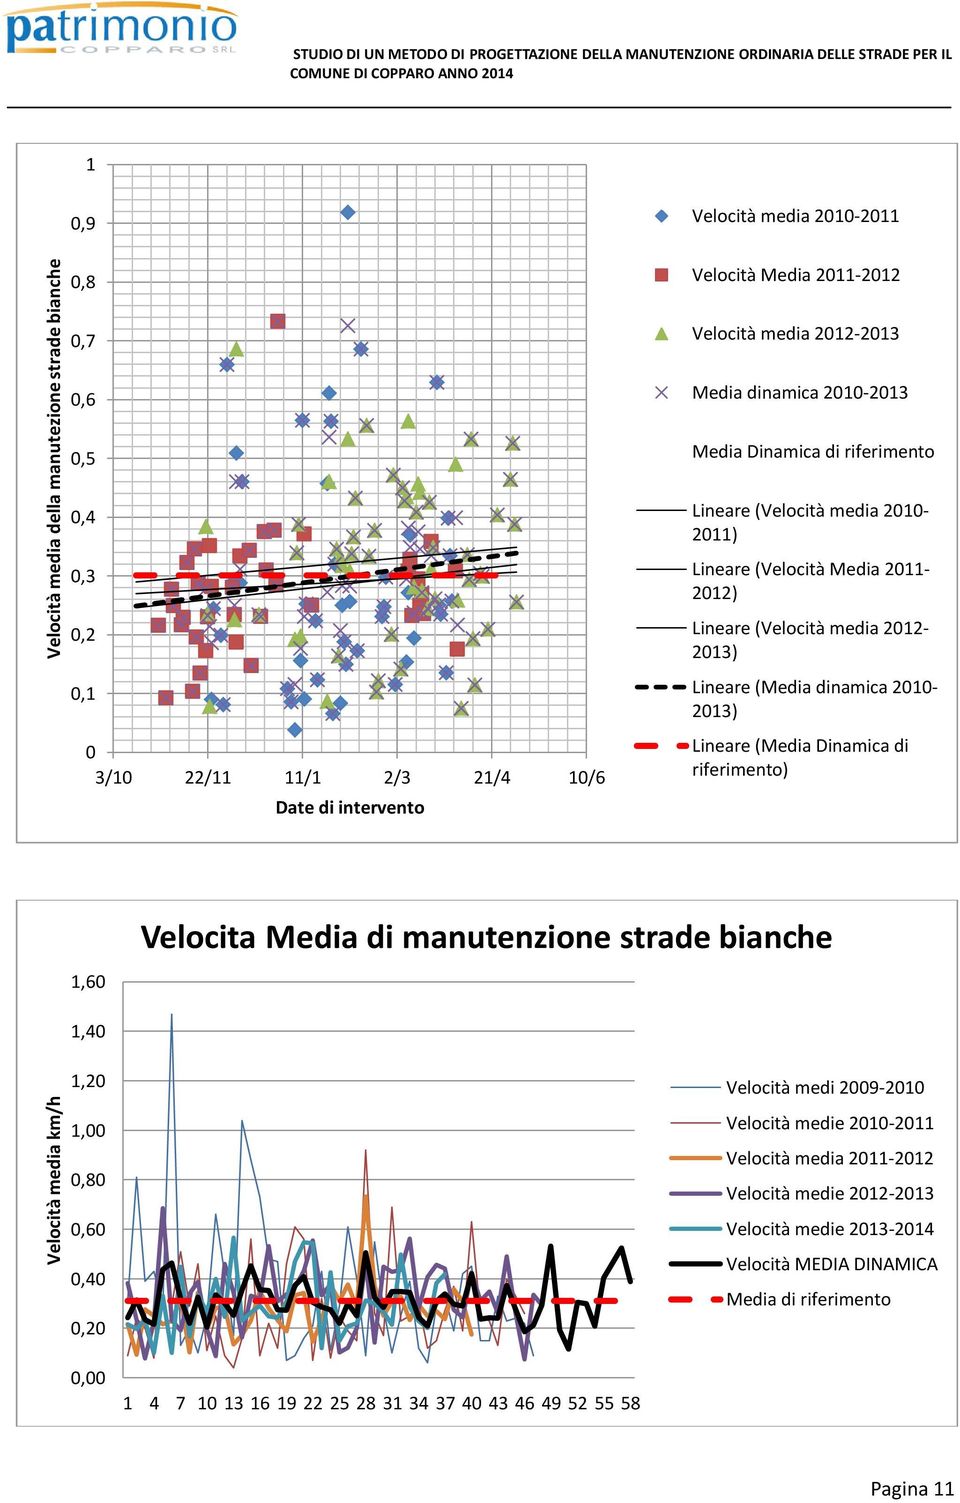 Lineare (Media dinamica 2010-2013) Lineare (Media Dinamica di riferimento) 1,60 Velocita Media di manutenzione strade bianche 1,40 1,20 1,00 0,80 0,60 0,40 0,20 Velocità medi 2009-2010 Velocità